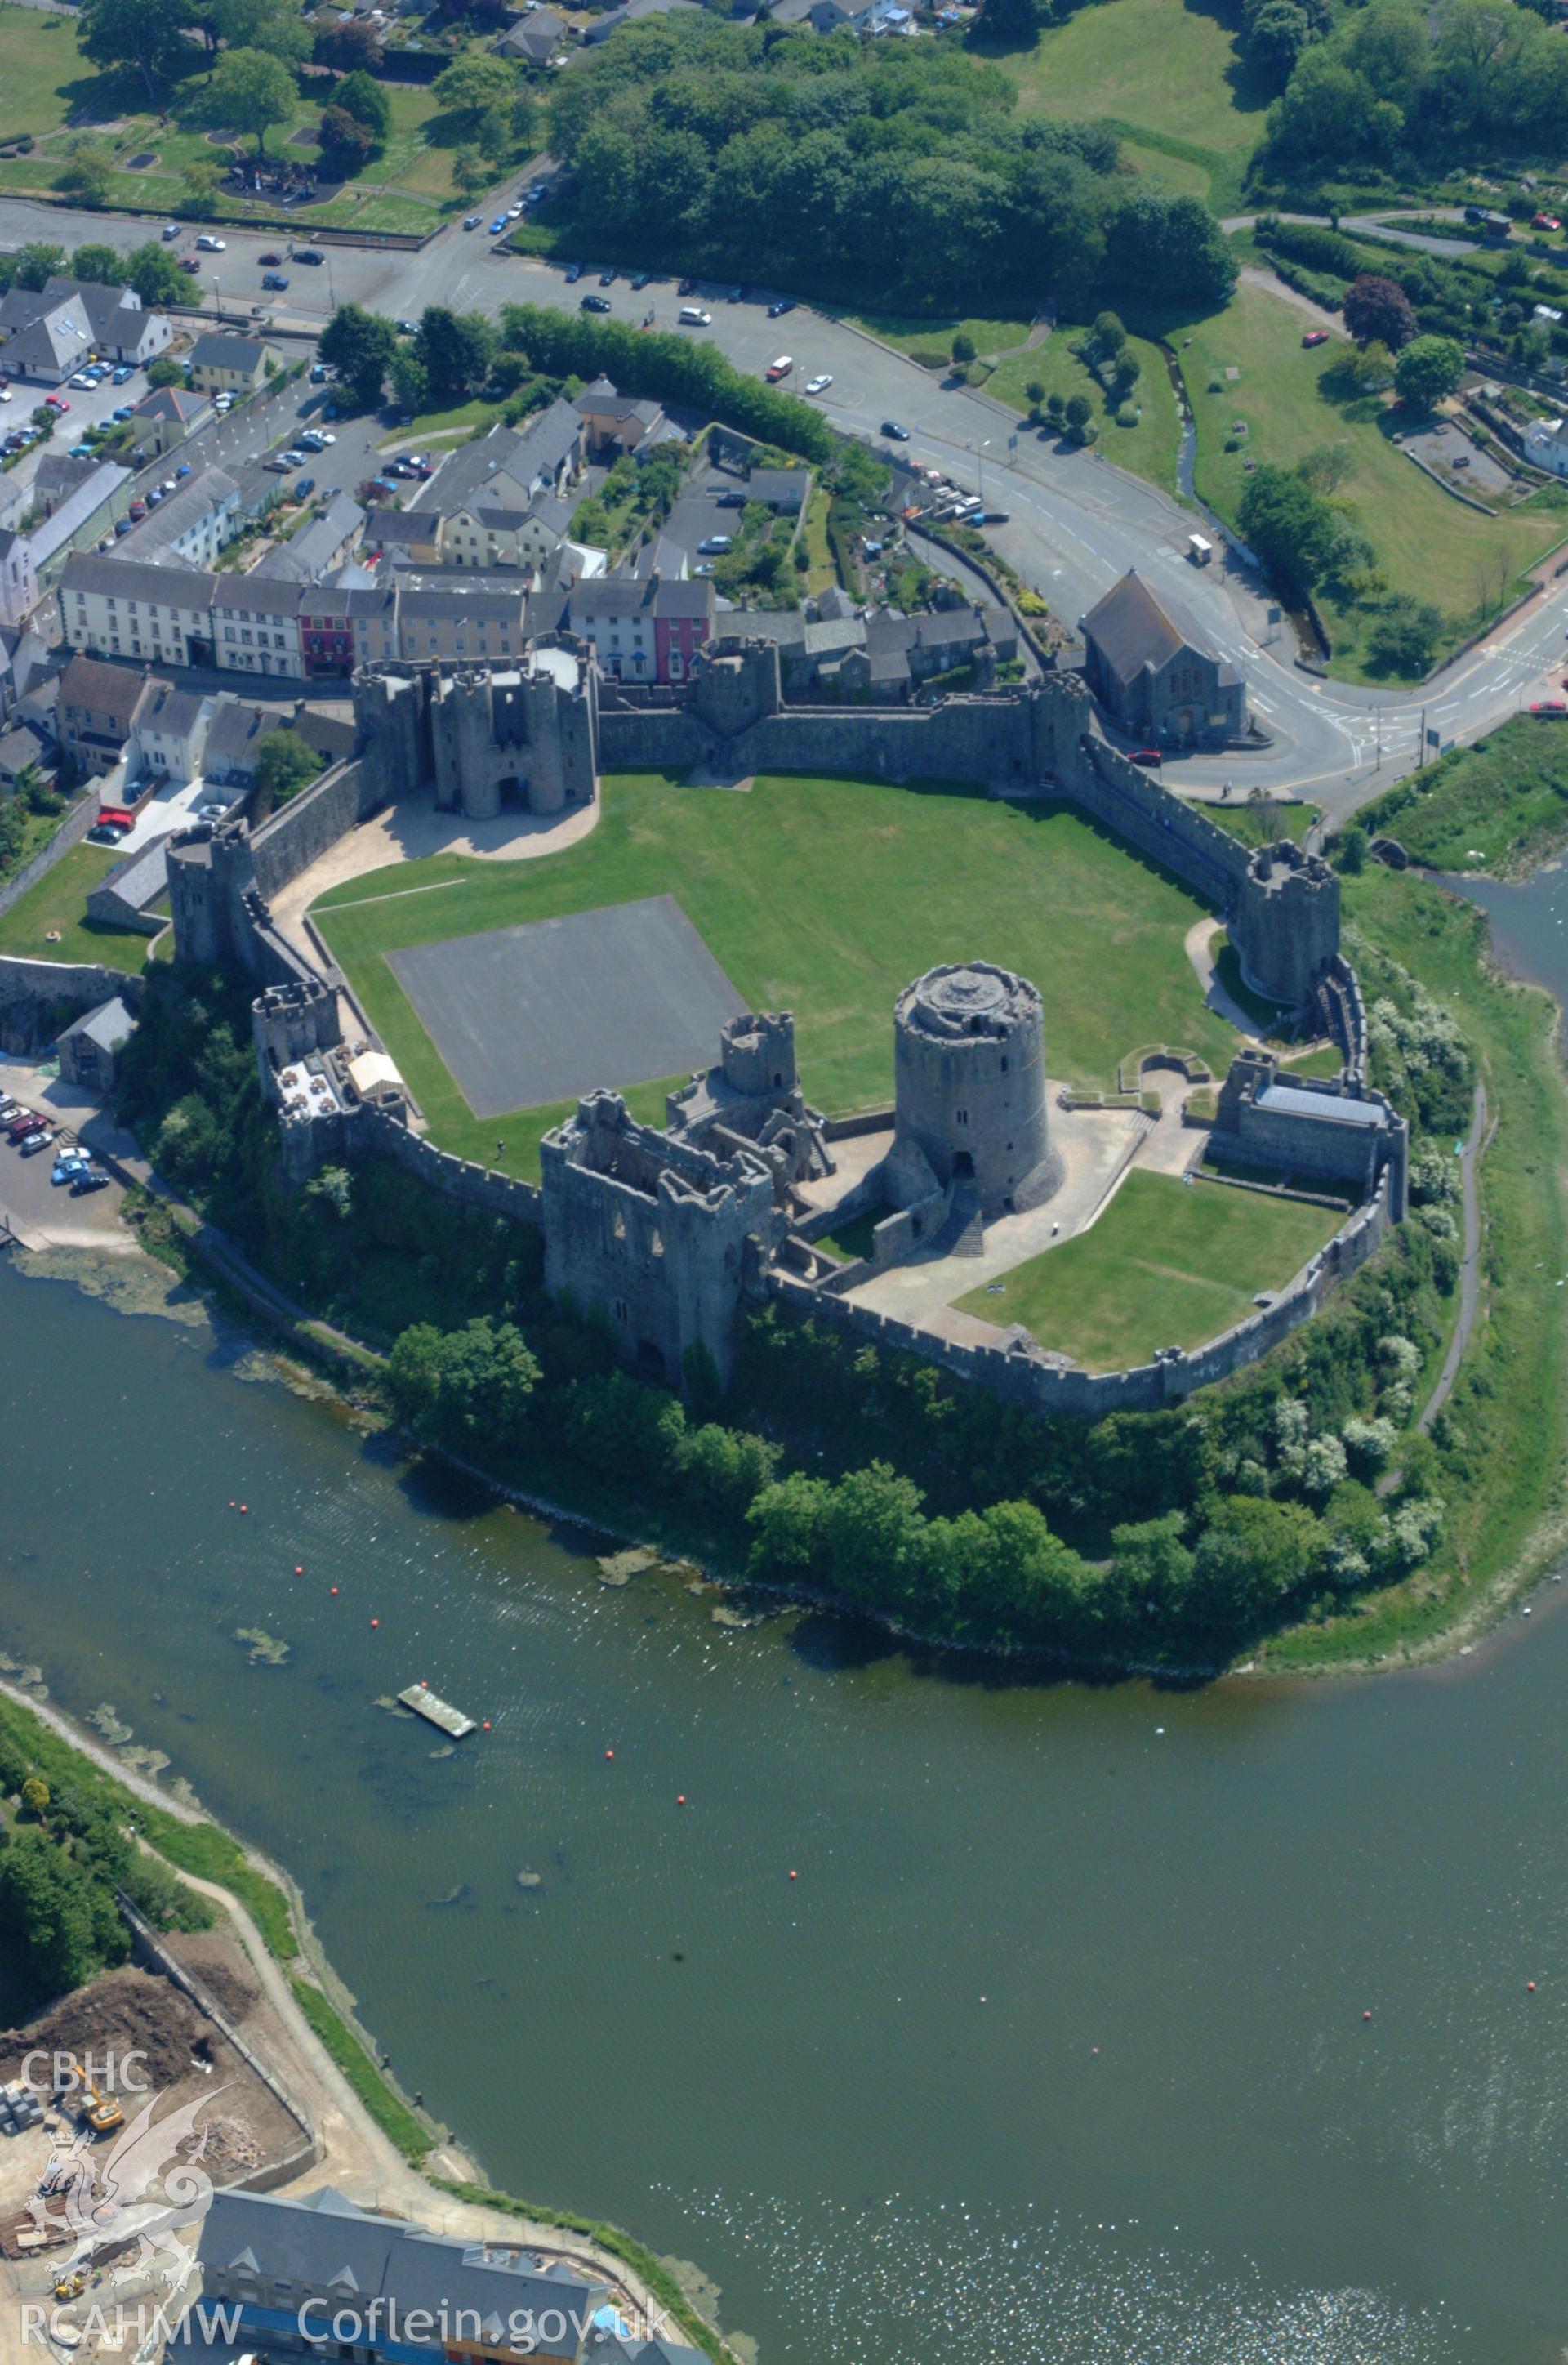 RCAHMW colour oblique aerial photograph of Pembroke Castle taken on 24/05/2004 by Toby Driver